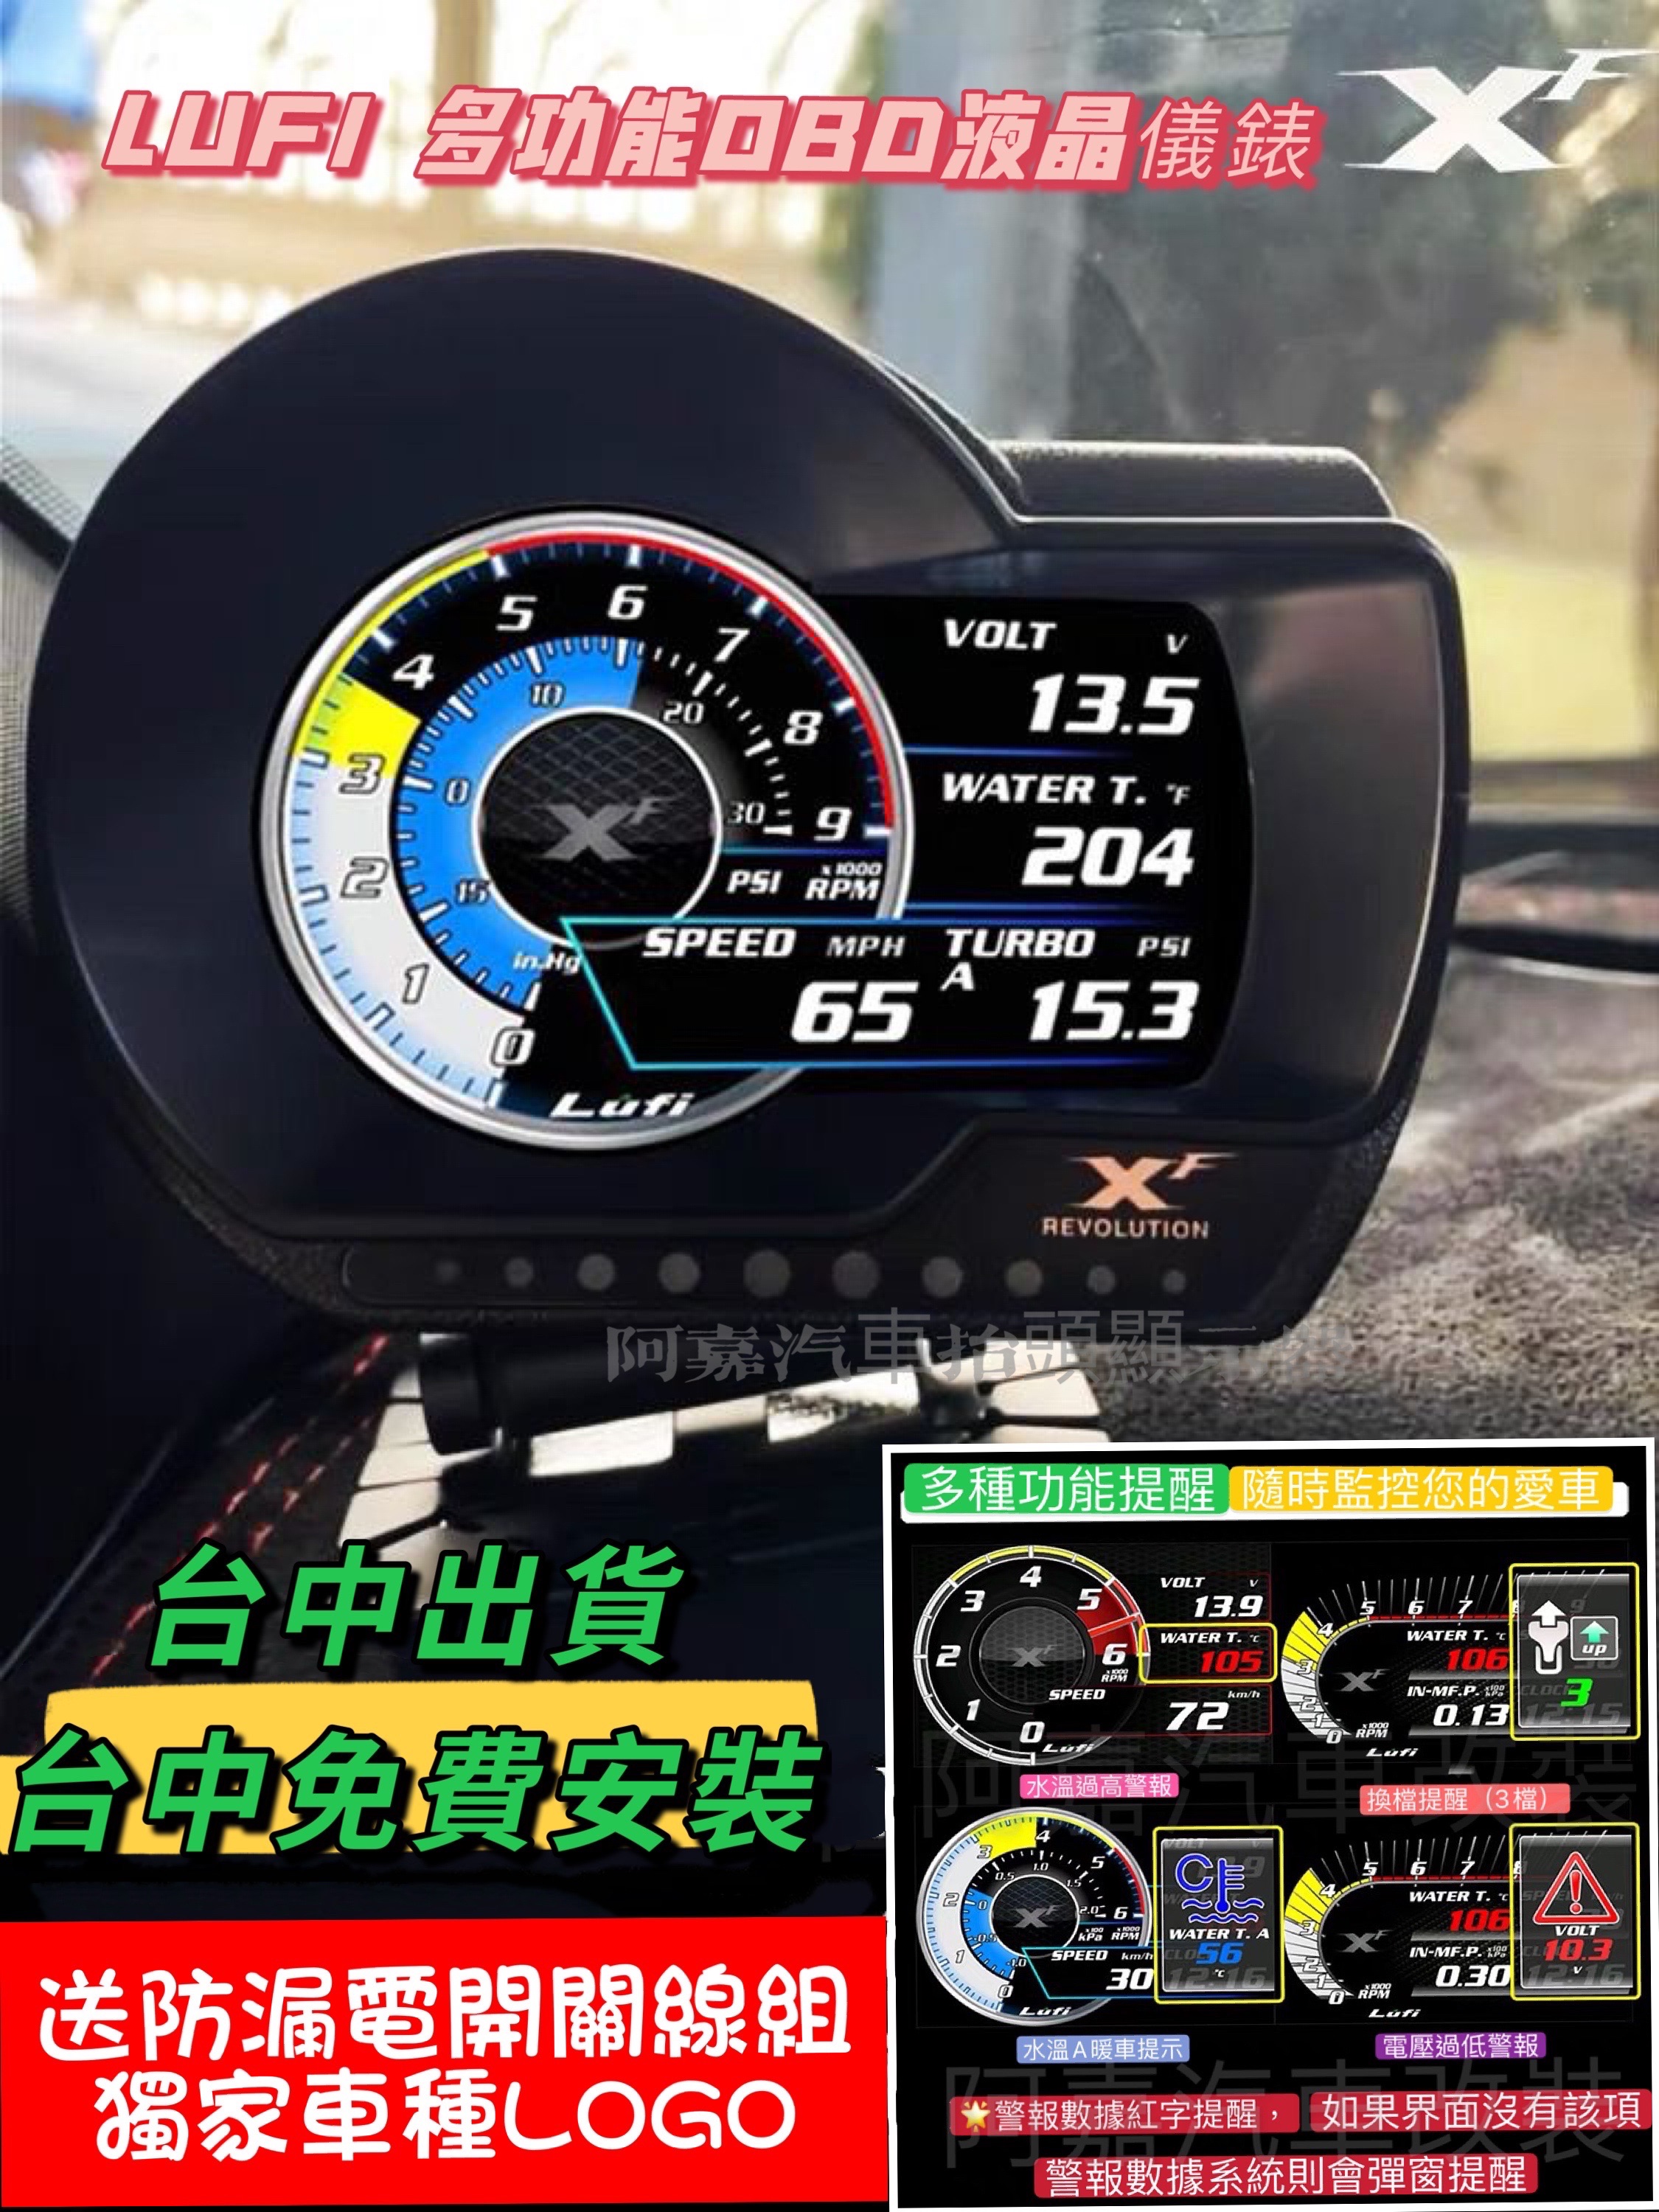 台中現貨 免運 公司貨 繁體中文版 Lufi XF 二代 OBD 抬頭顯示器 可自行更新 50多種數據水溫錶 渦輪